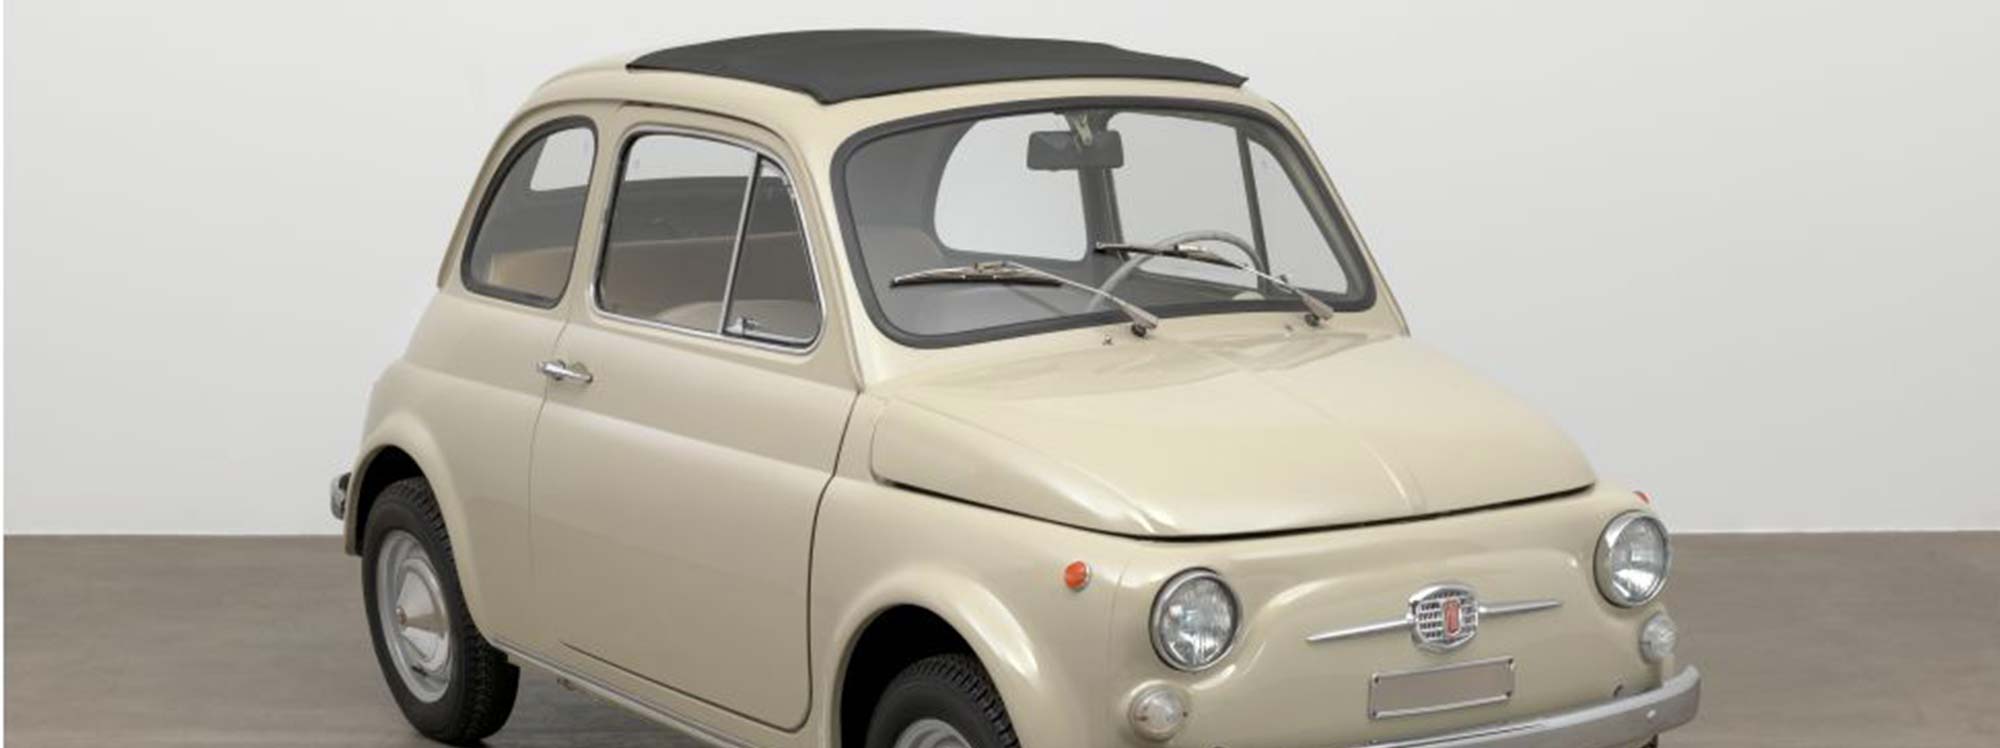 Ícono atemporal, el Fiat 500 cumple 65 años